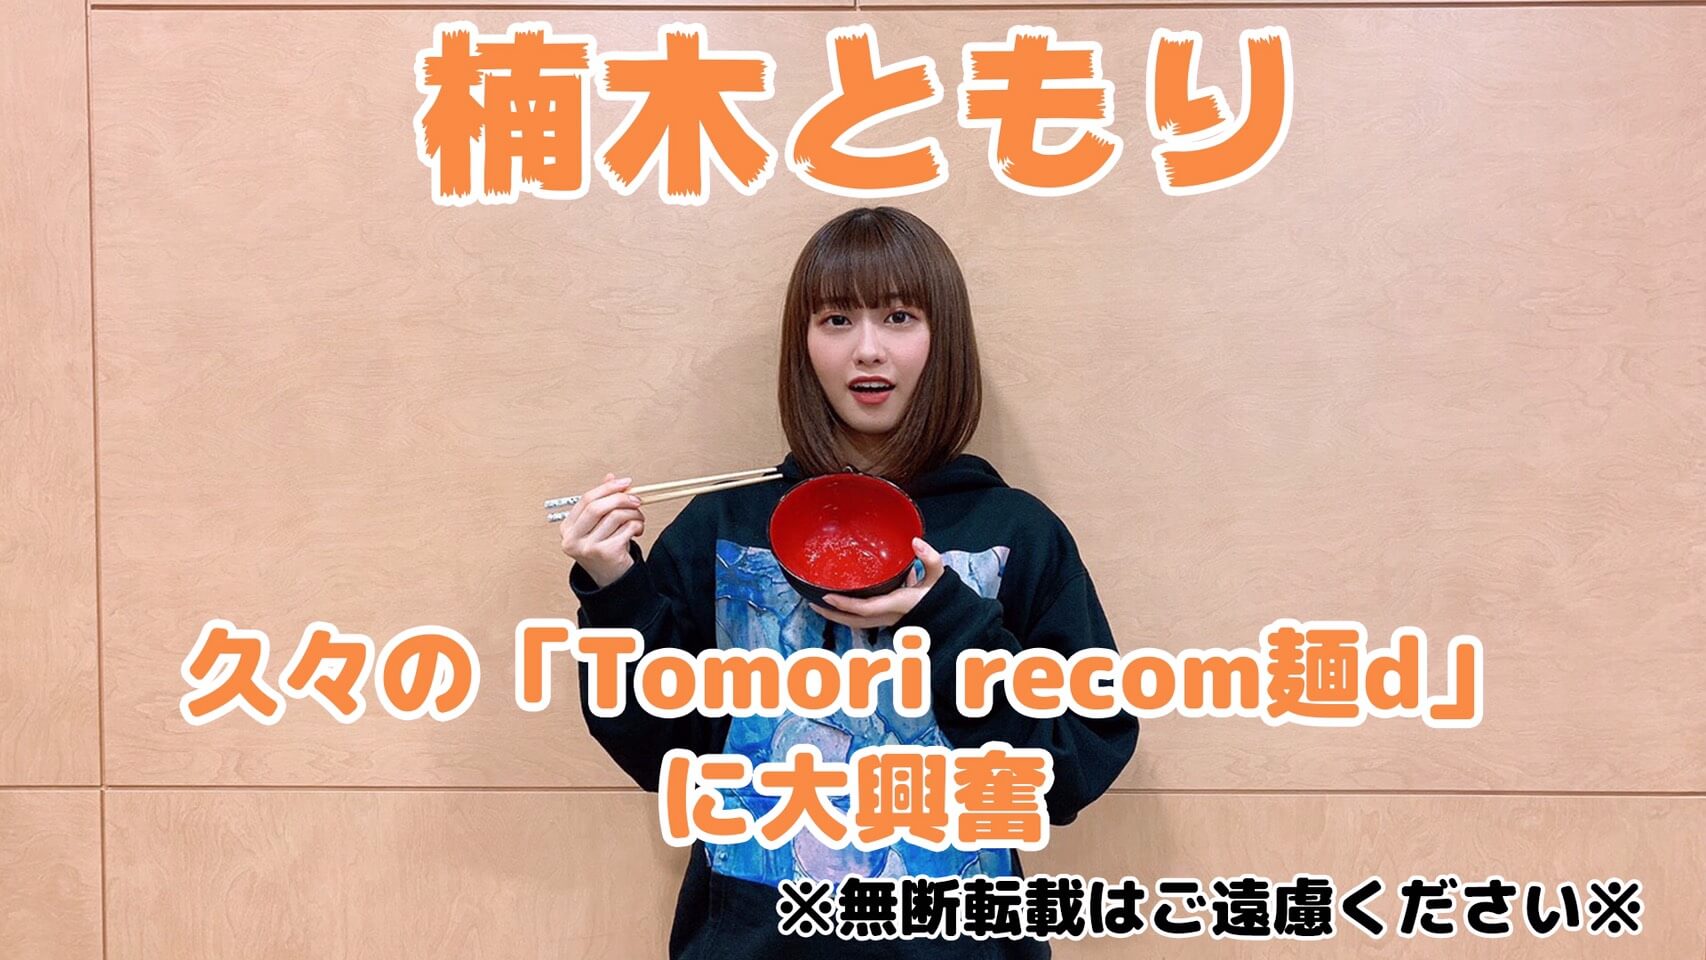 【楠木ともりThe Music Reverie】久々の「Tomori recom麺d」に大興奮